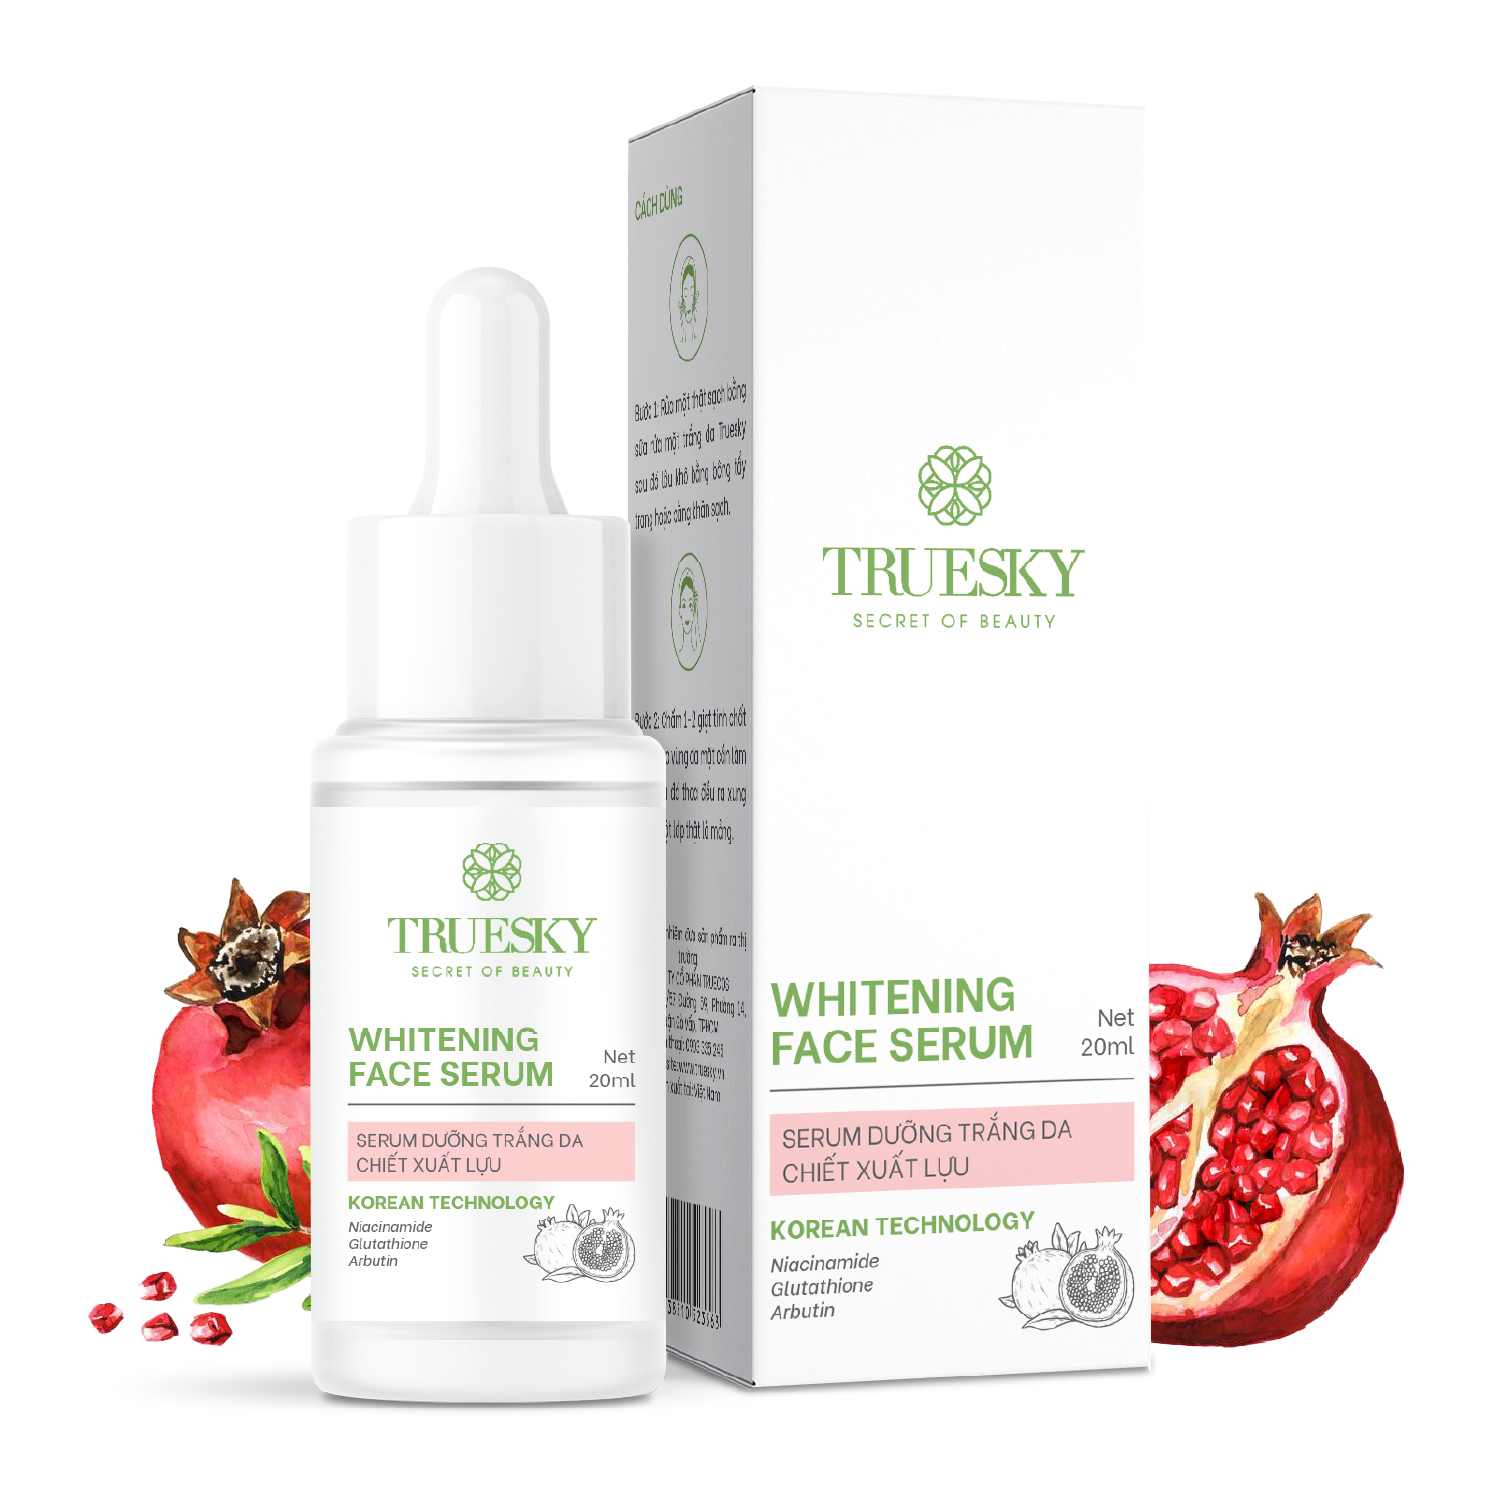 Tinh chất dưỡng trắng và ngăn ngừa lão hoá da mặt Truesky Whitening Face Serum chiết xuất quả lựu 20ml